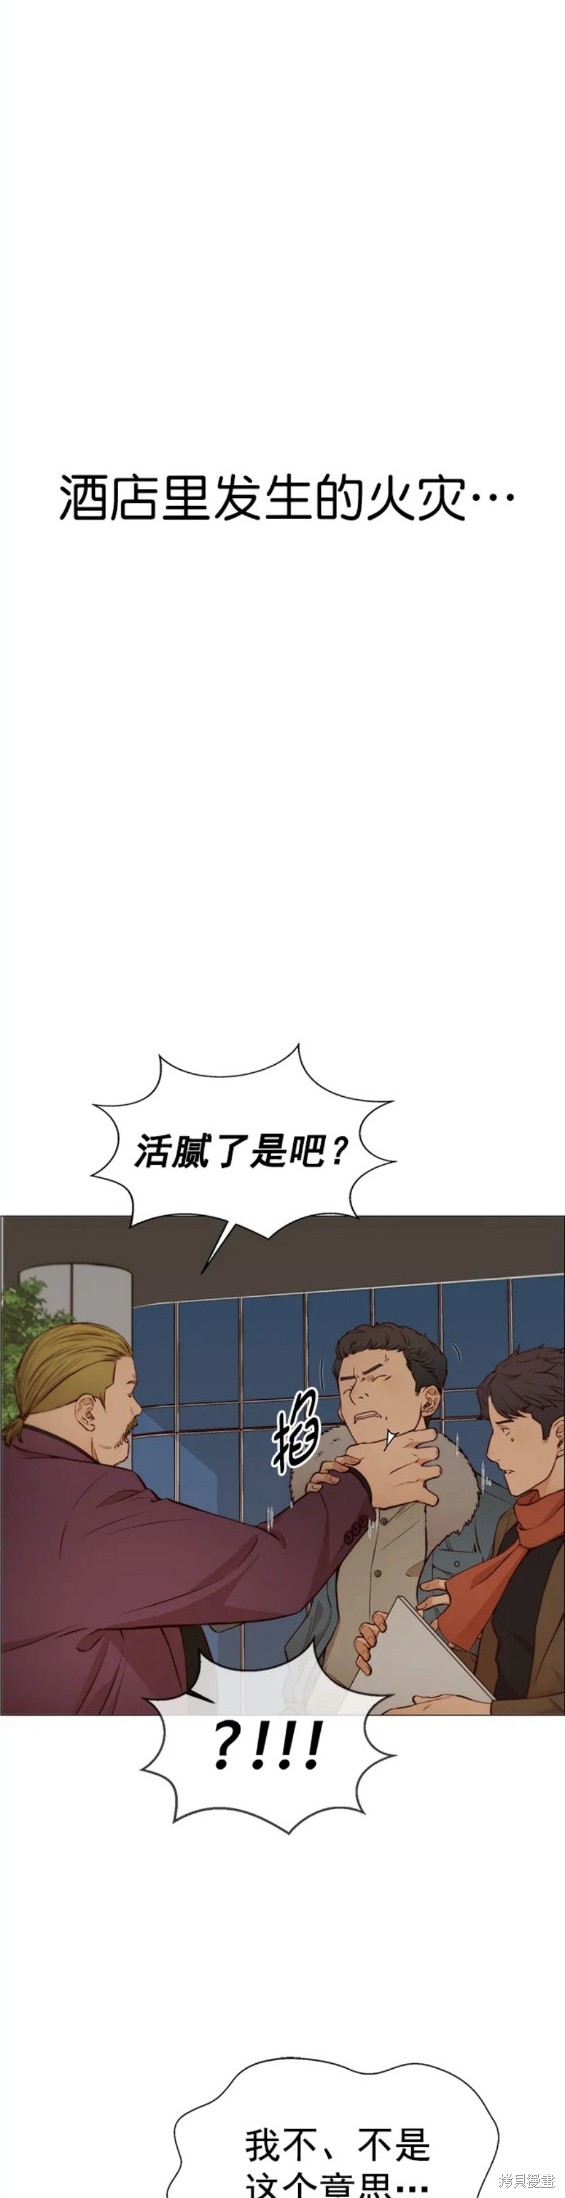 男子汉漫画,第128话19图